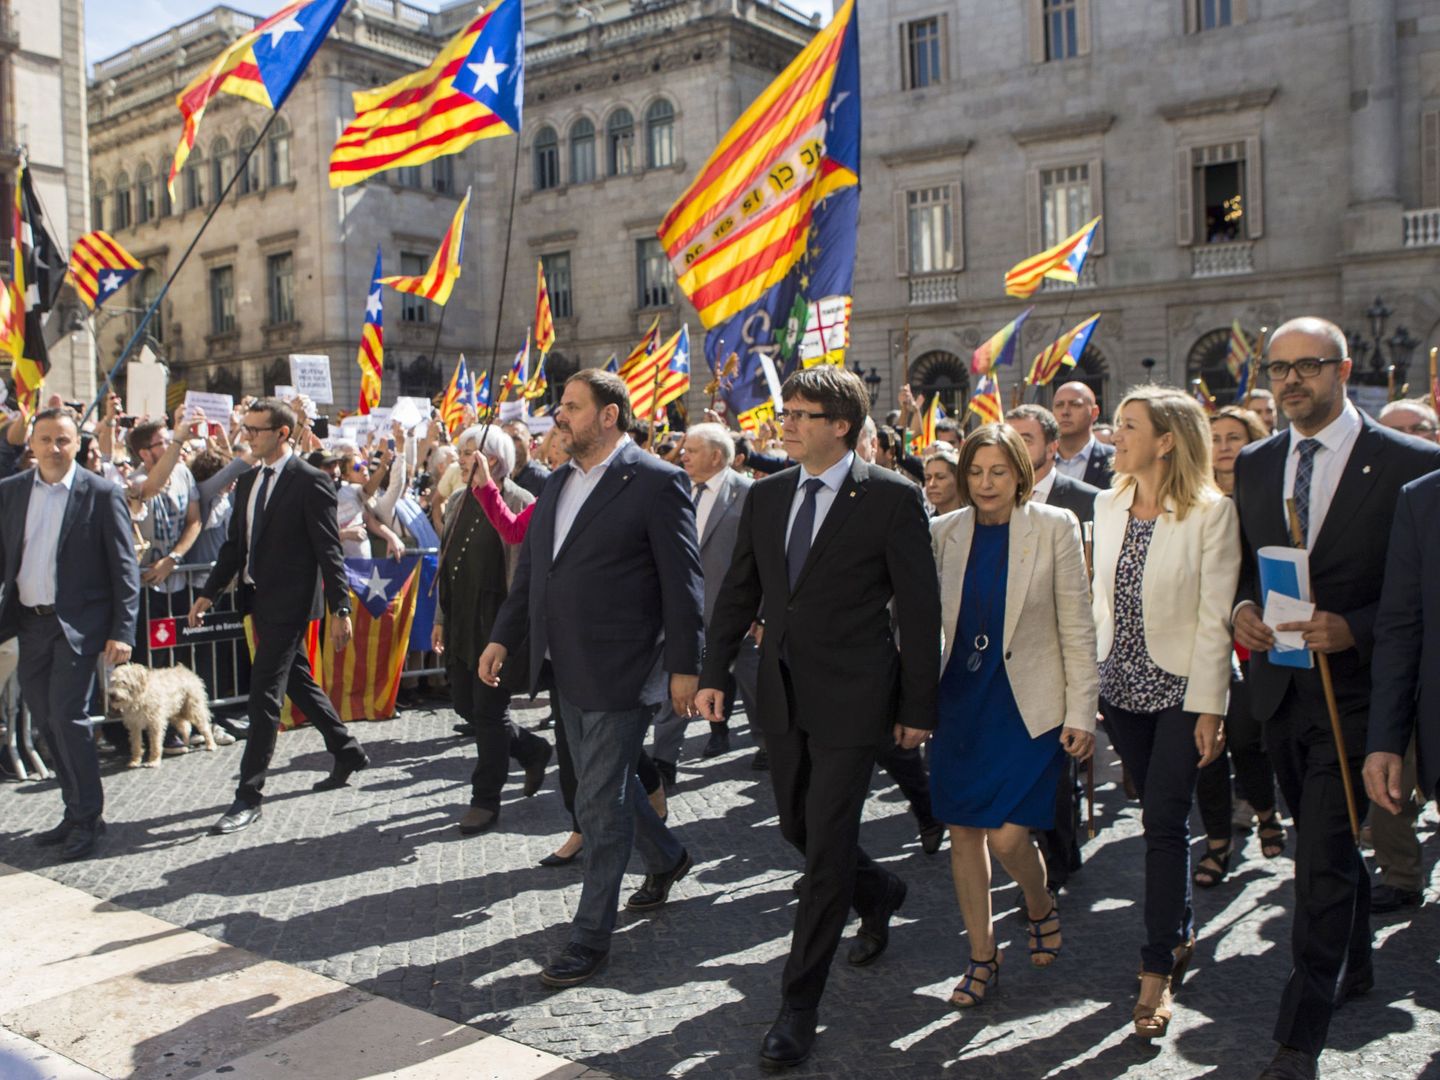 El presidente de la Generalitat de Cataluña, Carles Puigdemont, la presidenta del Parlamento, Carme Forcadell, y el vicepresidente, Oriol Junqueras, en la plaza Sant Jaume de Barcelona. (EFE)